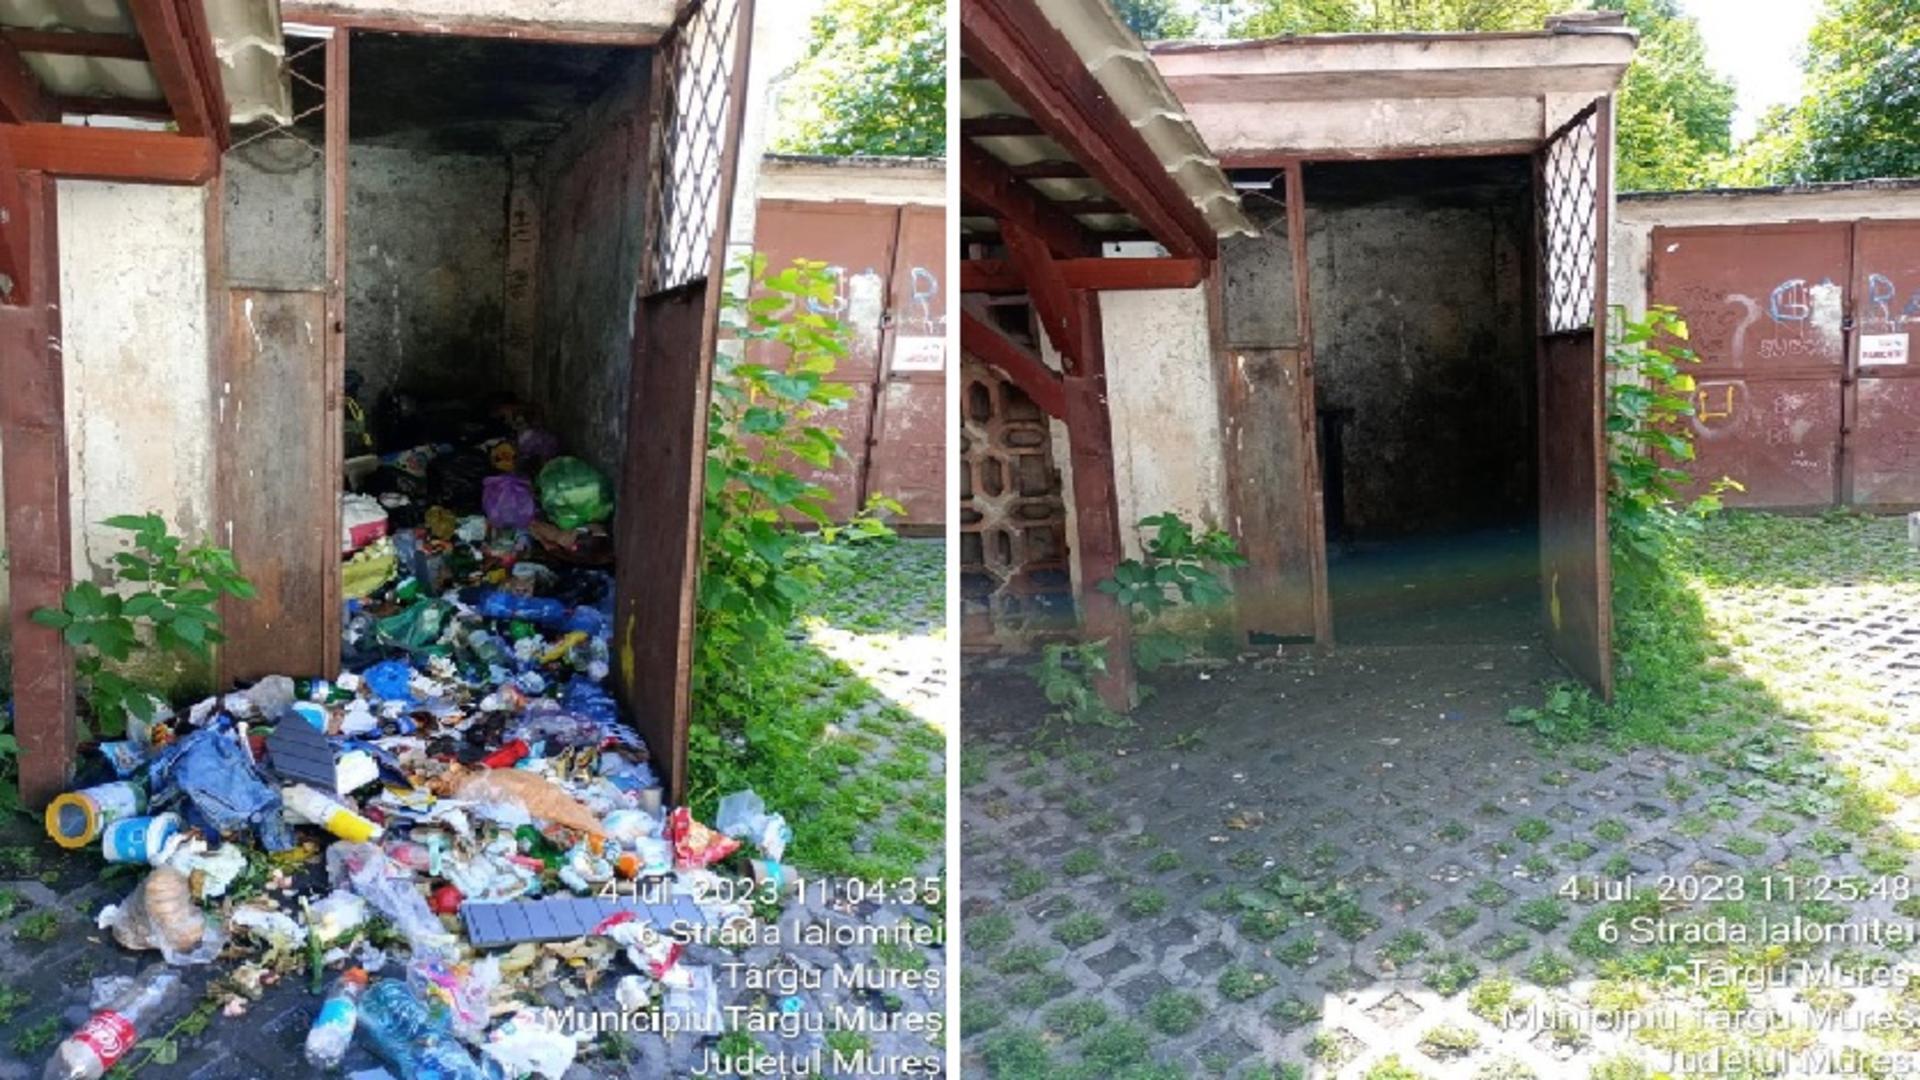 Coșmarul locuitorilor din Târgu Mureș încetează, începând de astăzi: s-a dat startul ridicării gunoiului. Acțiunea de igienizare, SABOTATĂ la maximum de vechiul operator! – FOTO și VIDEO